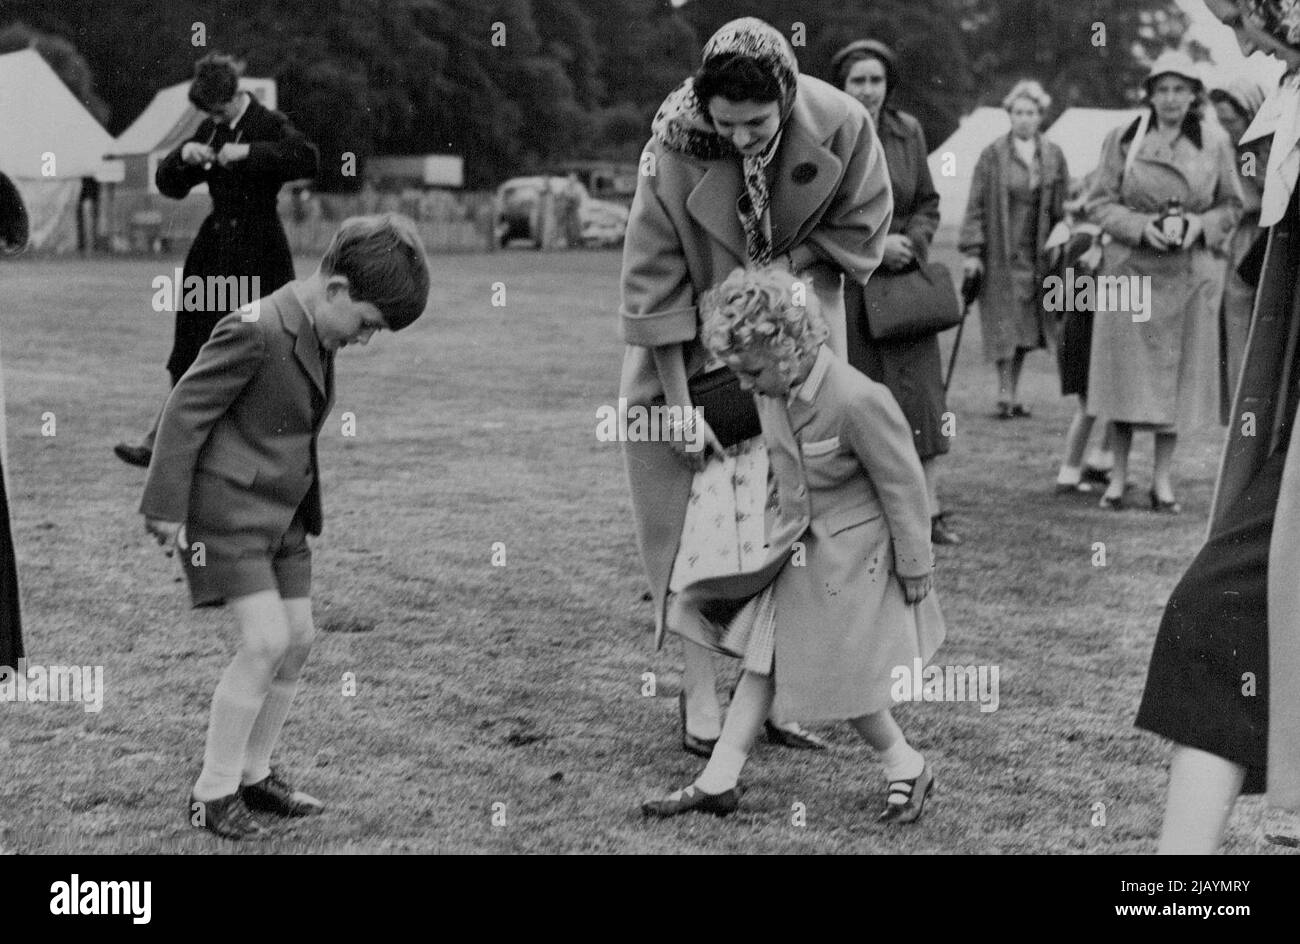 The Royal Family at Polo Tournament -- nach dem Vorbild von Königin Elizabeth am Vortag helfen Prinz Charles und Prinzessin Anne, den von den Poloponies in der Pause angepfropften unplatzierten Rasen zu beschreiten. H.M. die Königin mit ihren beiden Kindern Preise Charles und Prinzessin Anne nahmen an dem Polo-Turnier Teil, das jetzt auf Smith's Lawn im Windsor Great Park stattfindet, wo sie den Herzog von Edinburgh für eines der konkurrierenden Teams spielen sahen. 15. Juni 1955. (Foto: Sport & General Press Agency, Limited). Stockfoto